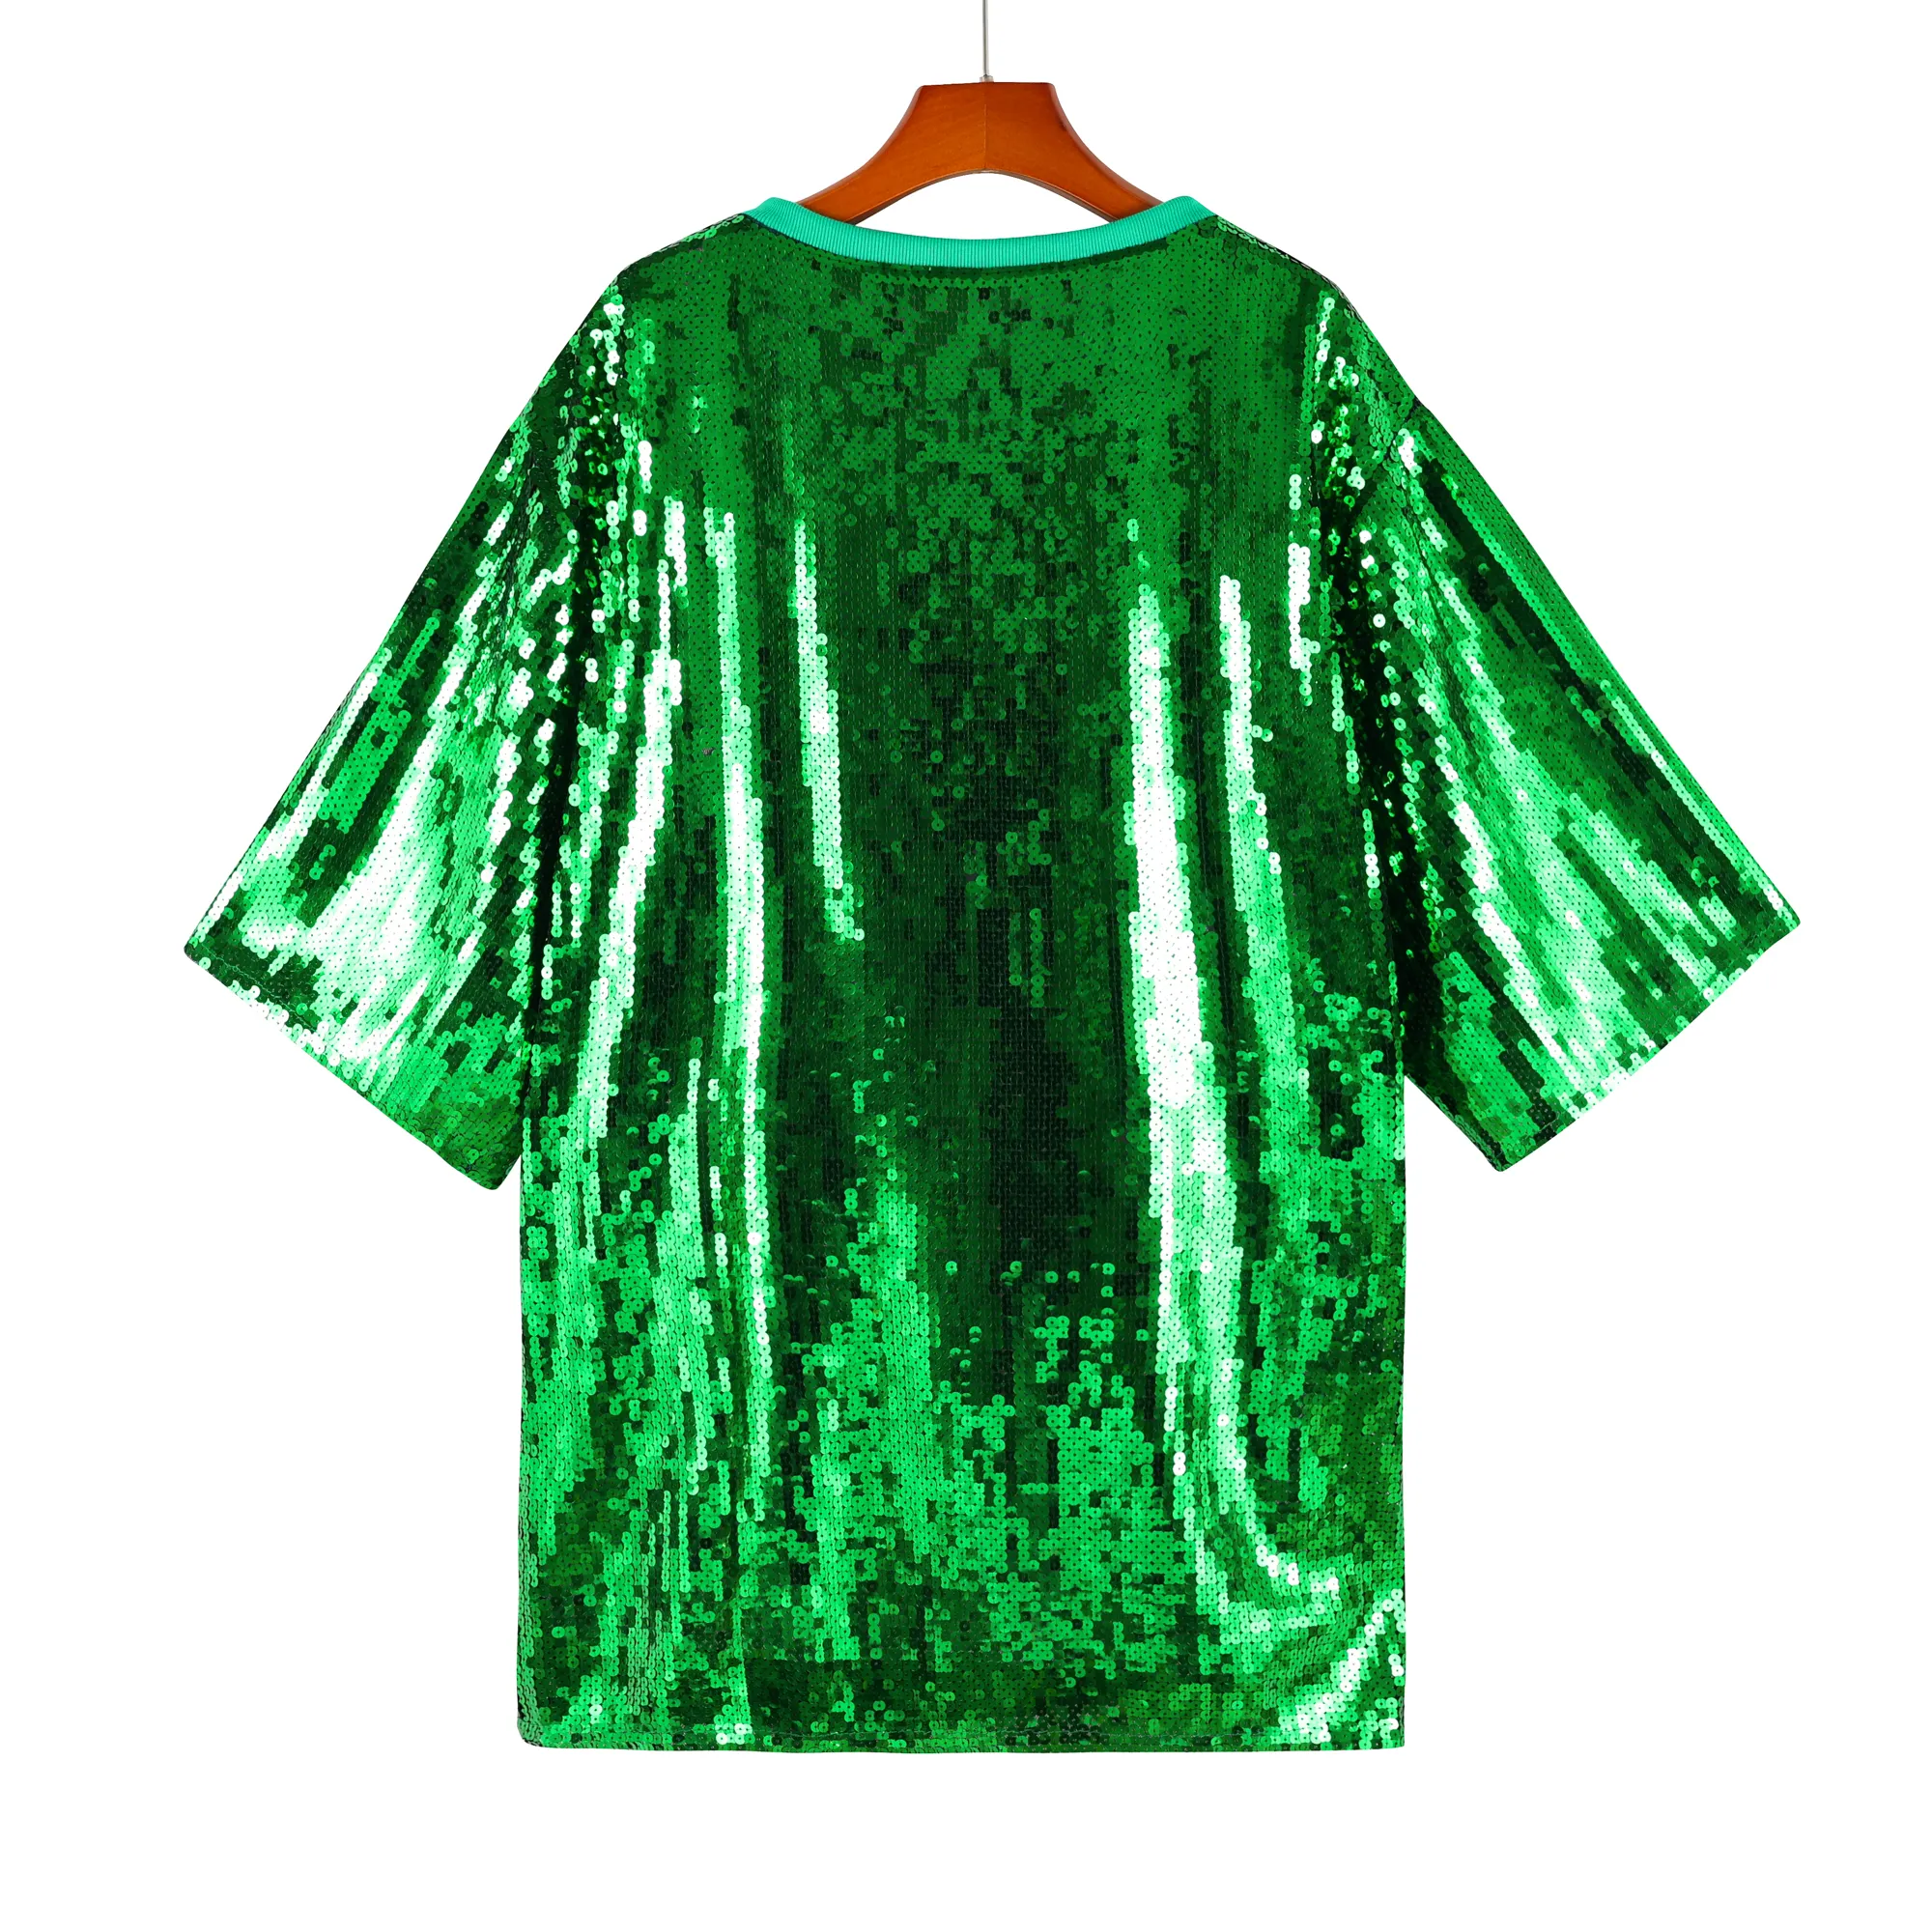 Venta al por mayor personalizado verde lentejuelas Jersey vestido camiseta Tops Bling Casual manga corta vestido de lentejuelas en stock